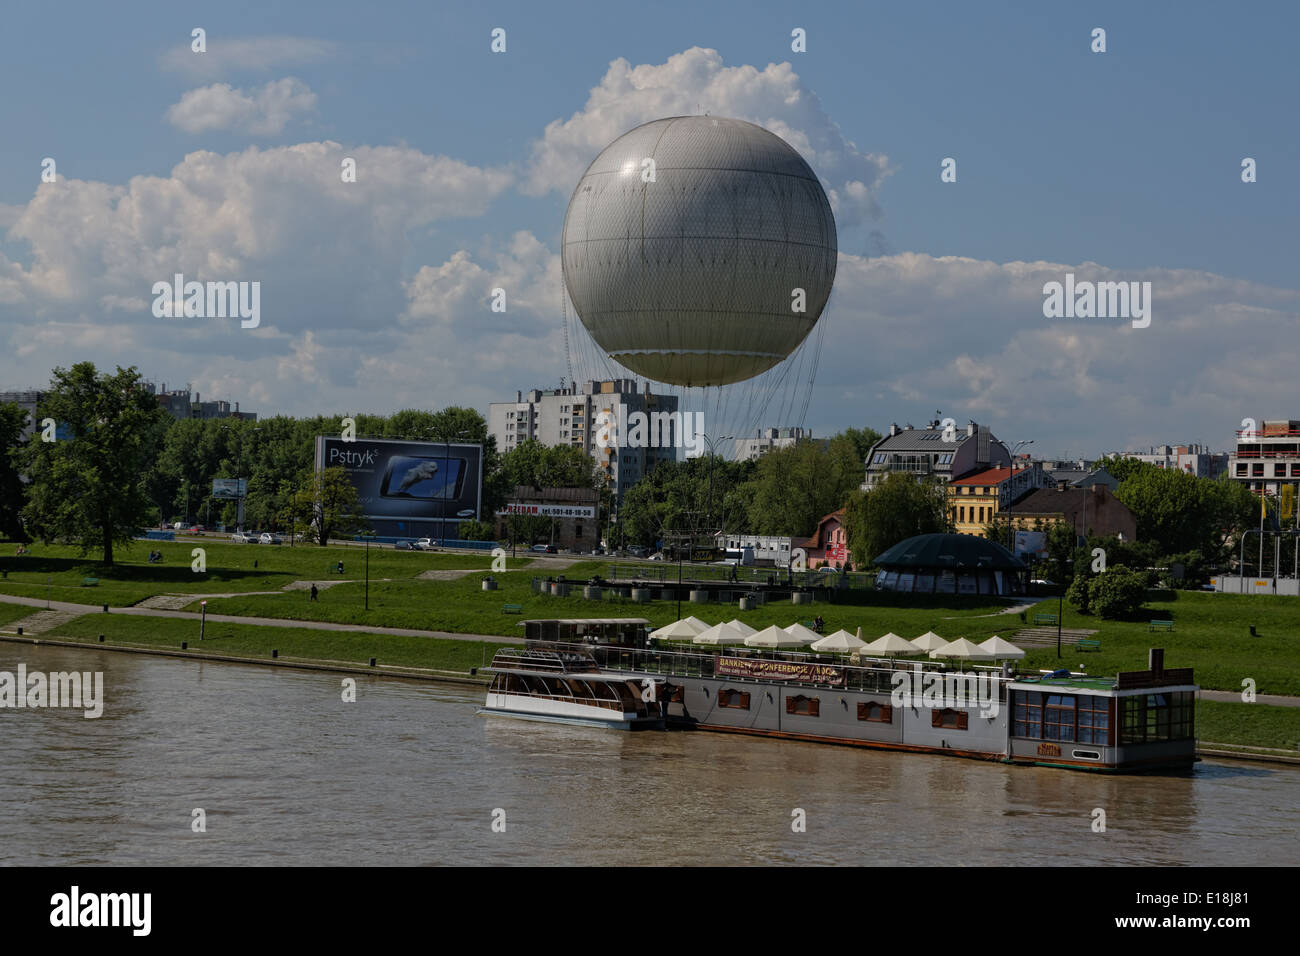 Krakau statische touristischen Beobachtung riesigen weißen Heliumballon in der Nähe der Weichsel Stockfoto